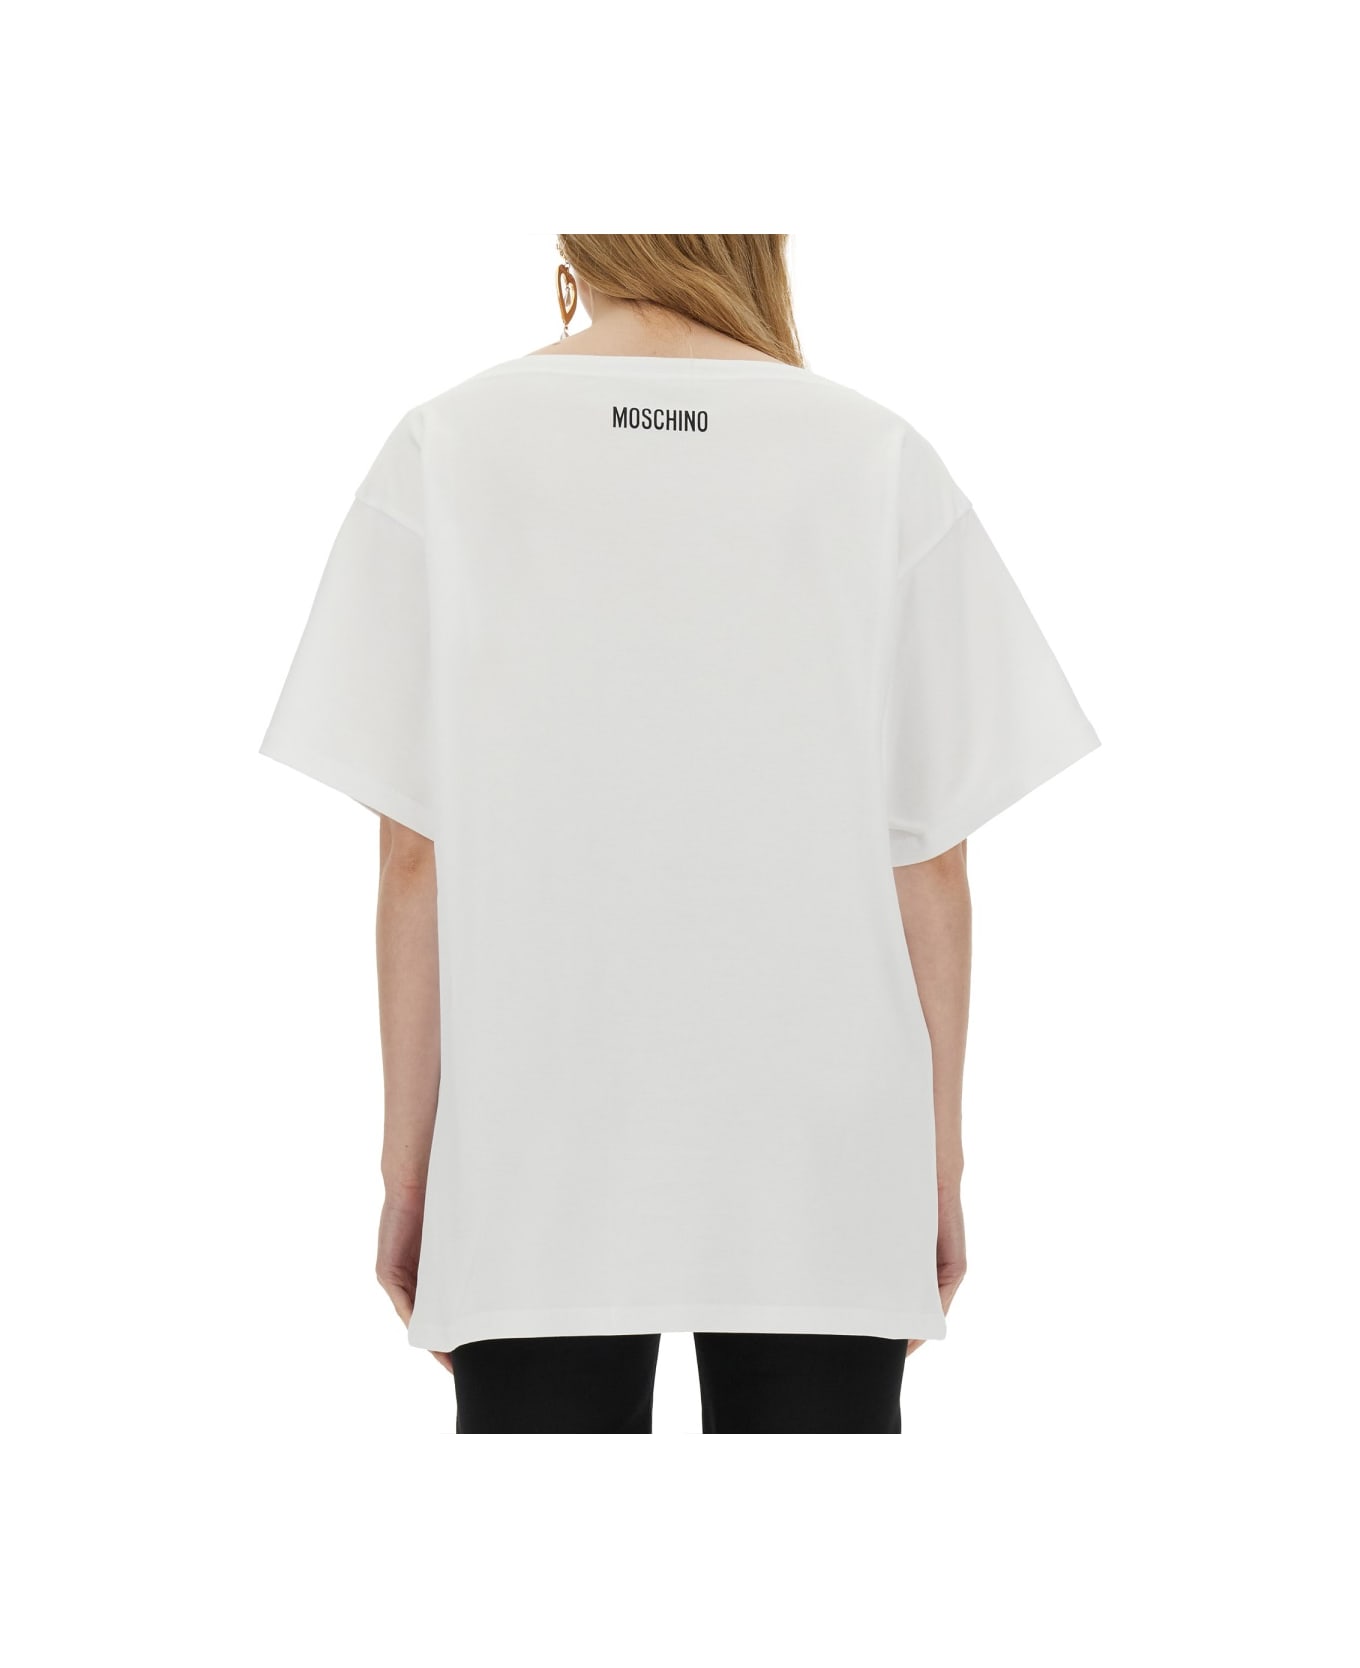 Moschino Interlock T-shirt - WHITE